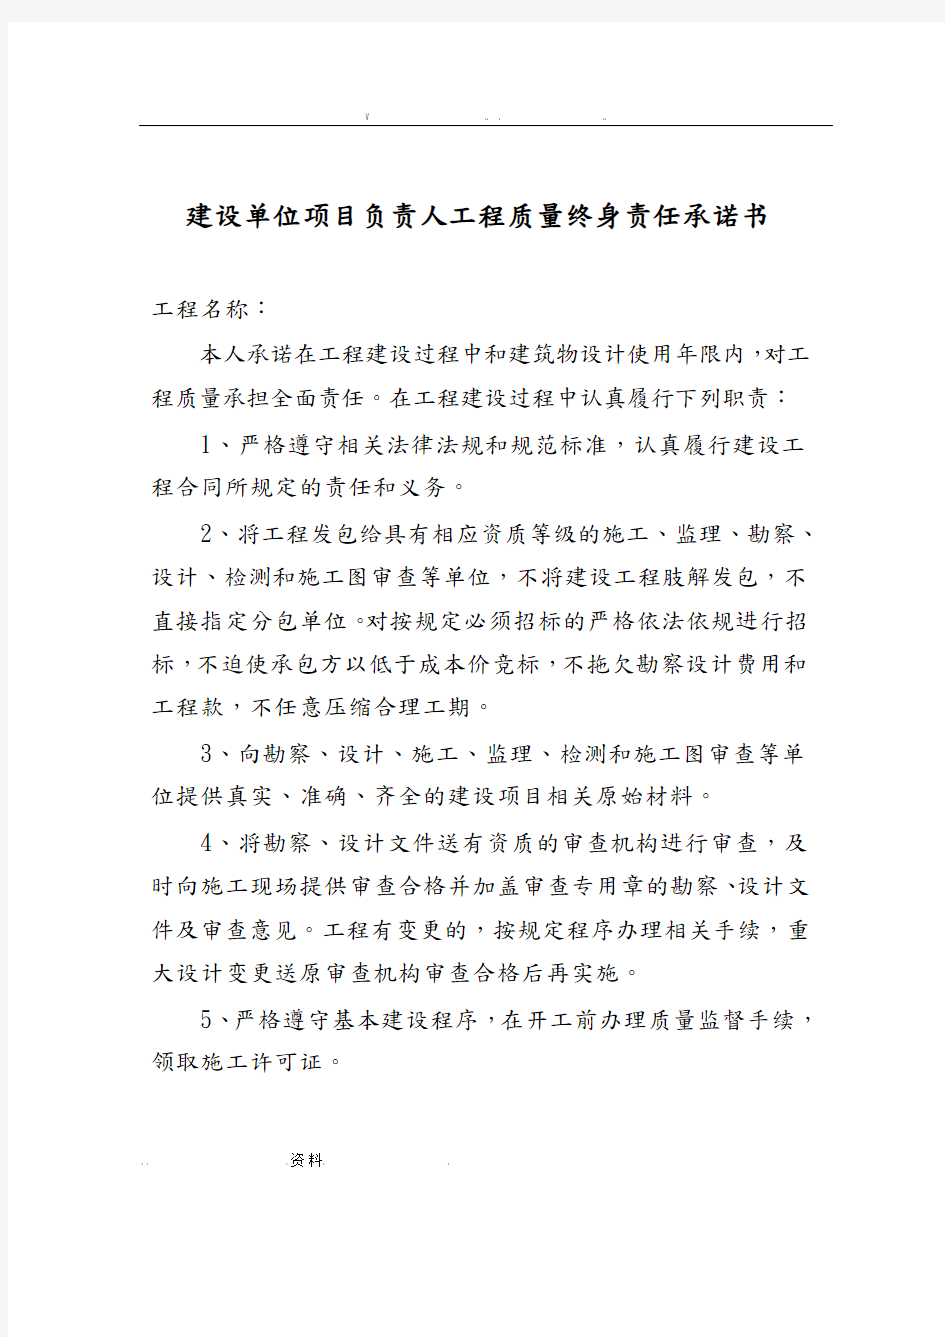 上海市五方责任人承诺书